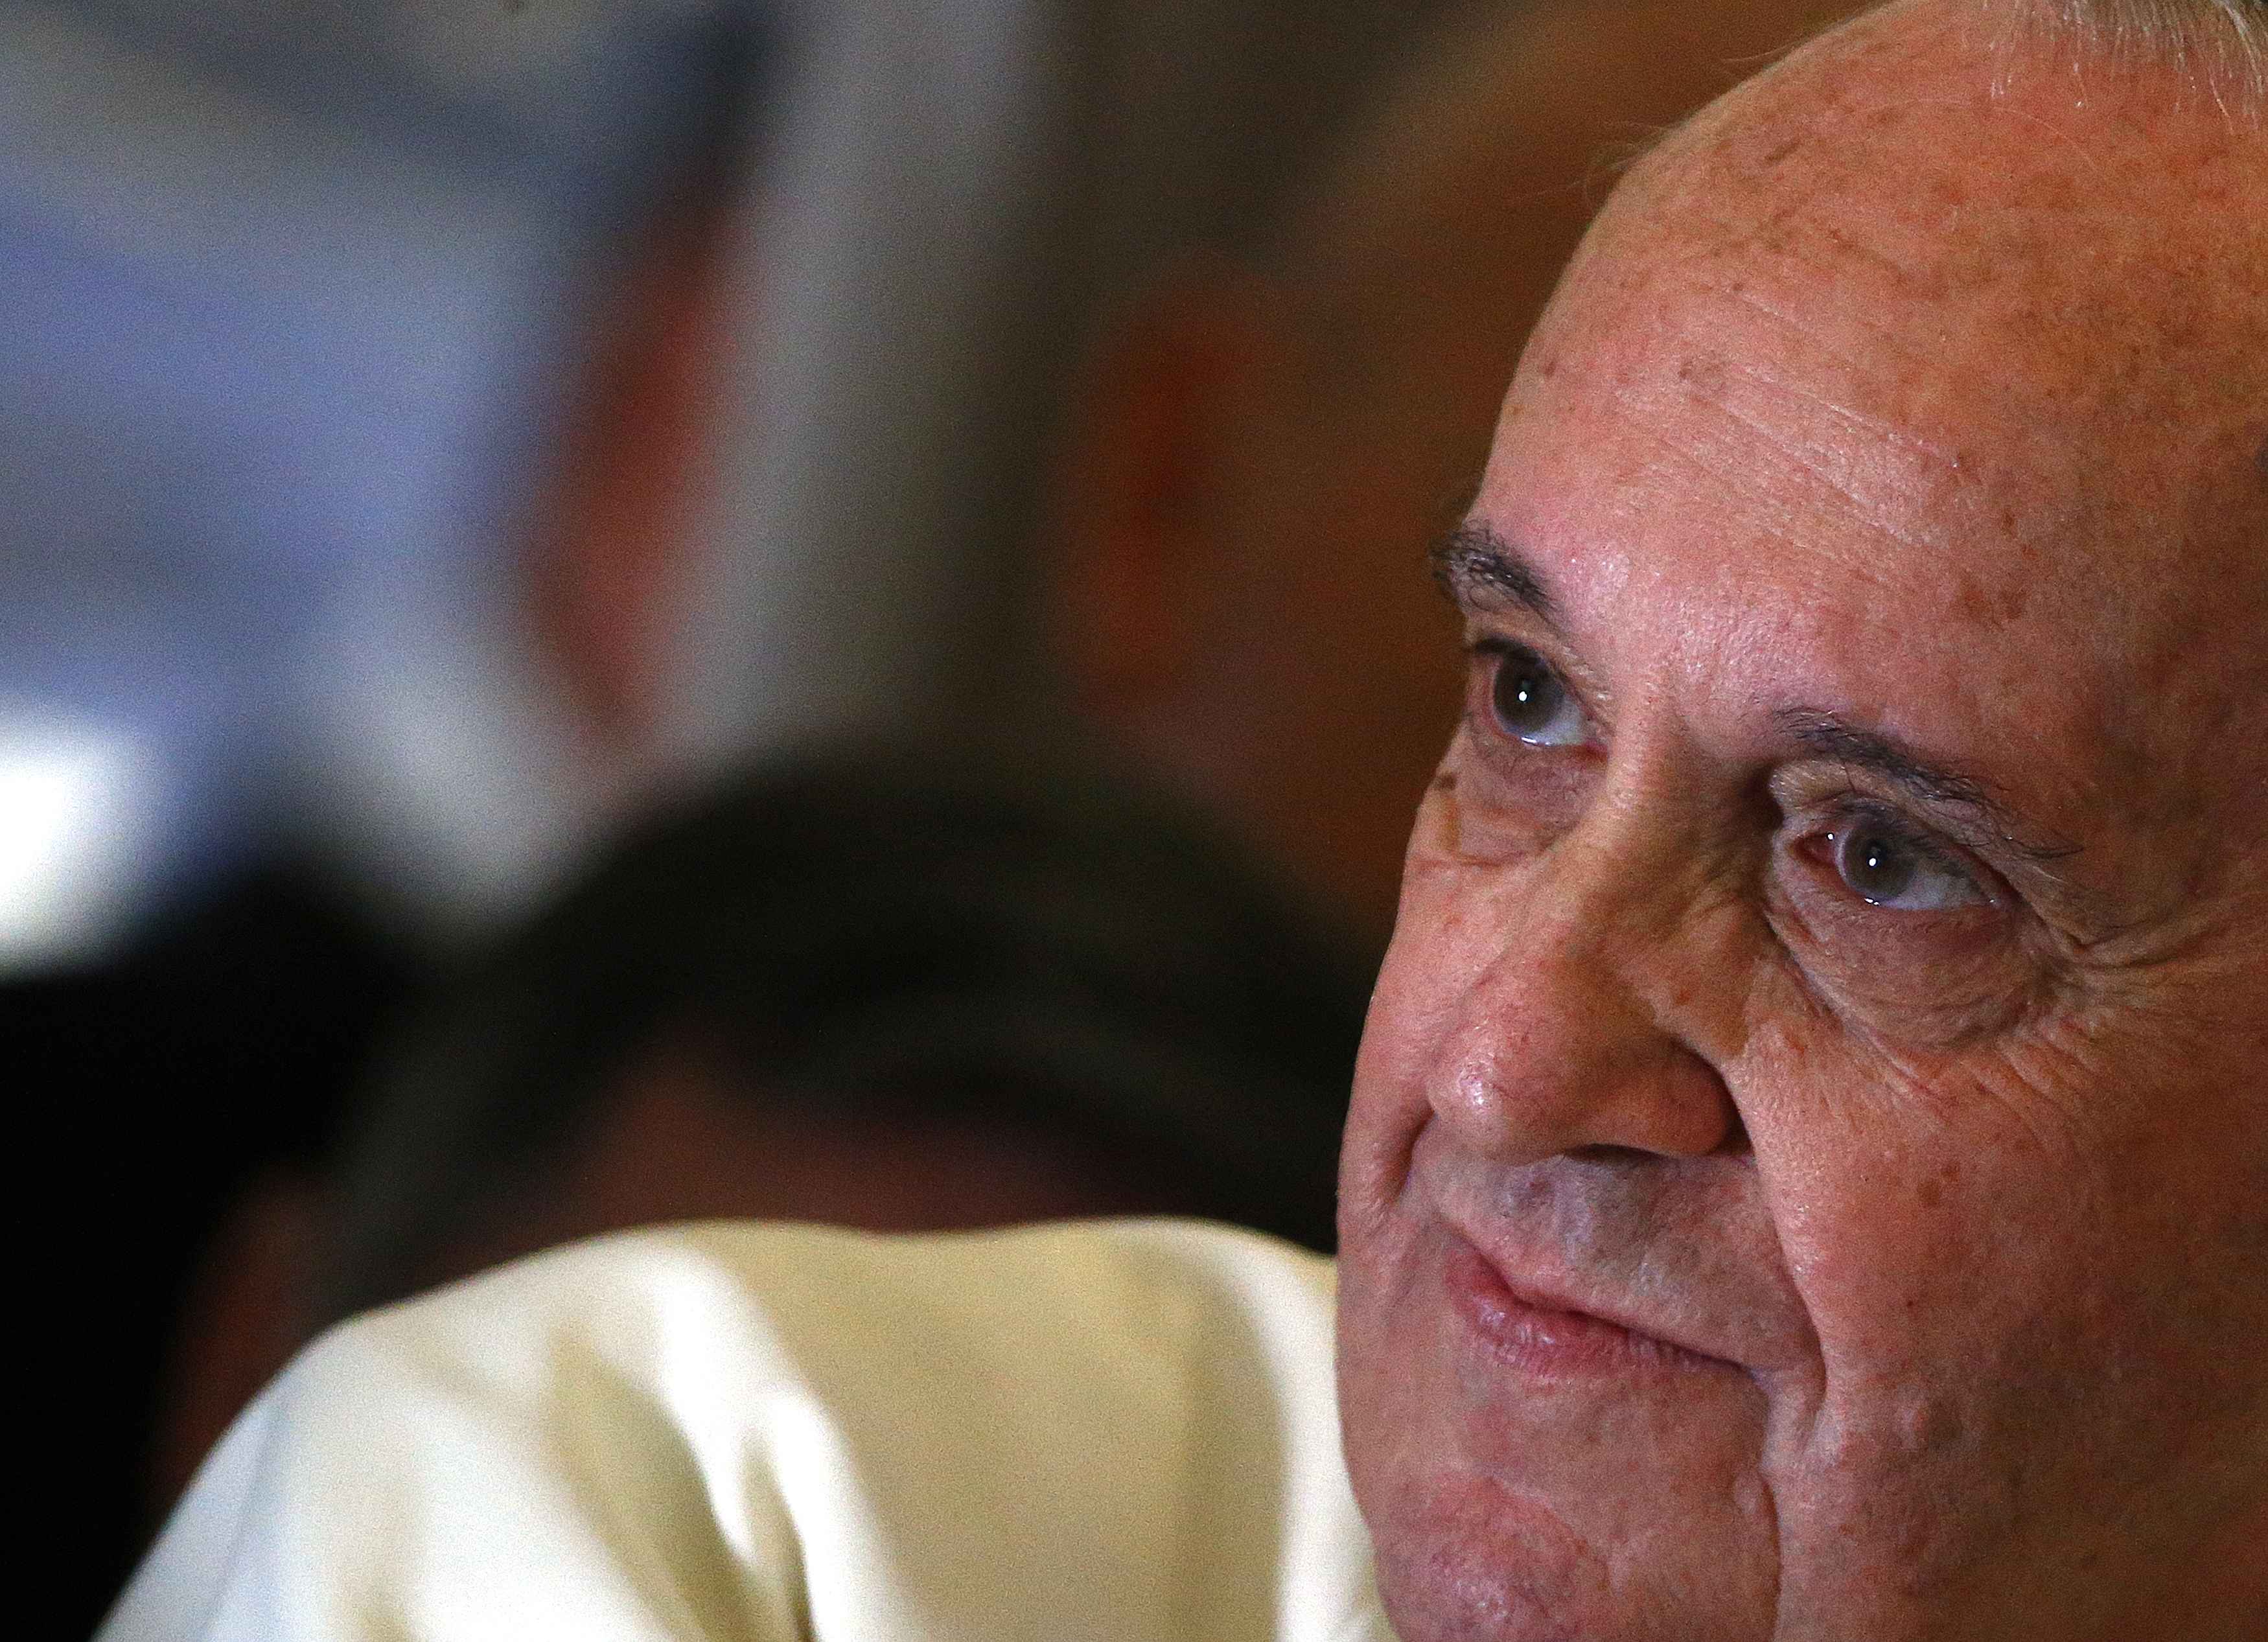 El Papa denuncia la globalización de la indiferencia en mensaje de Cuaresma